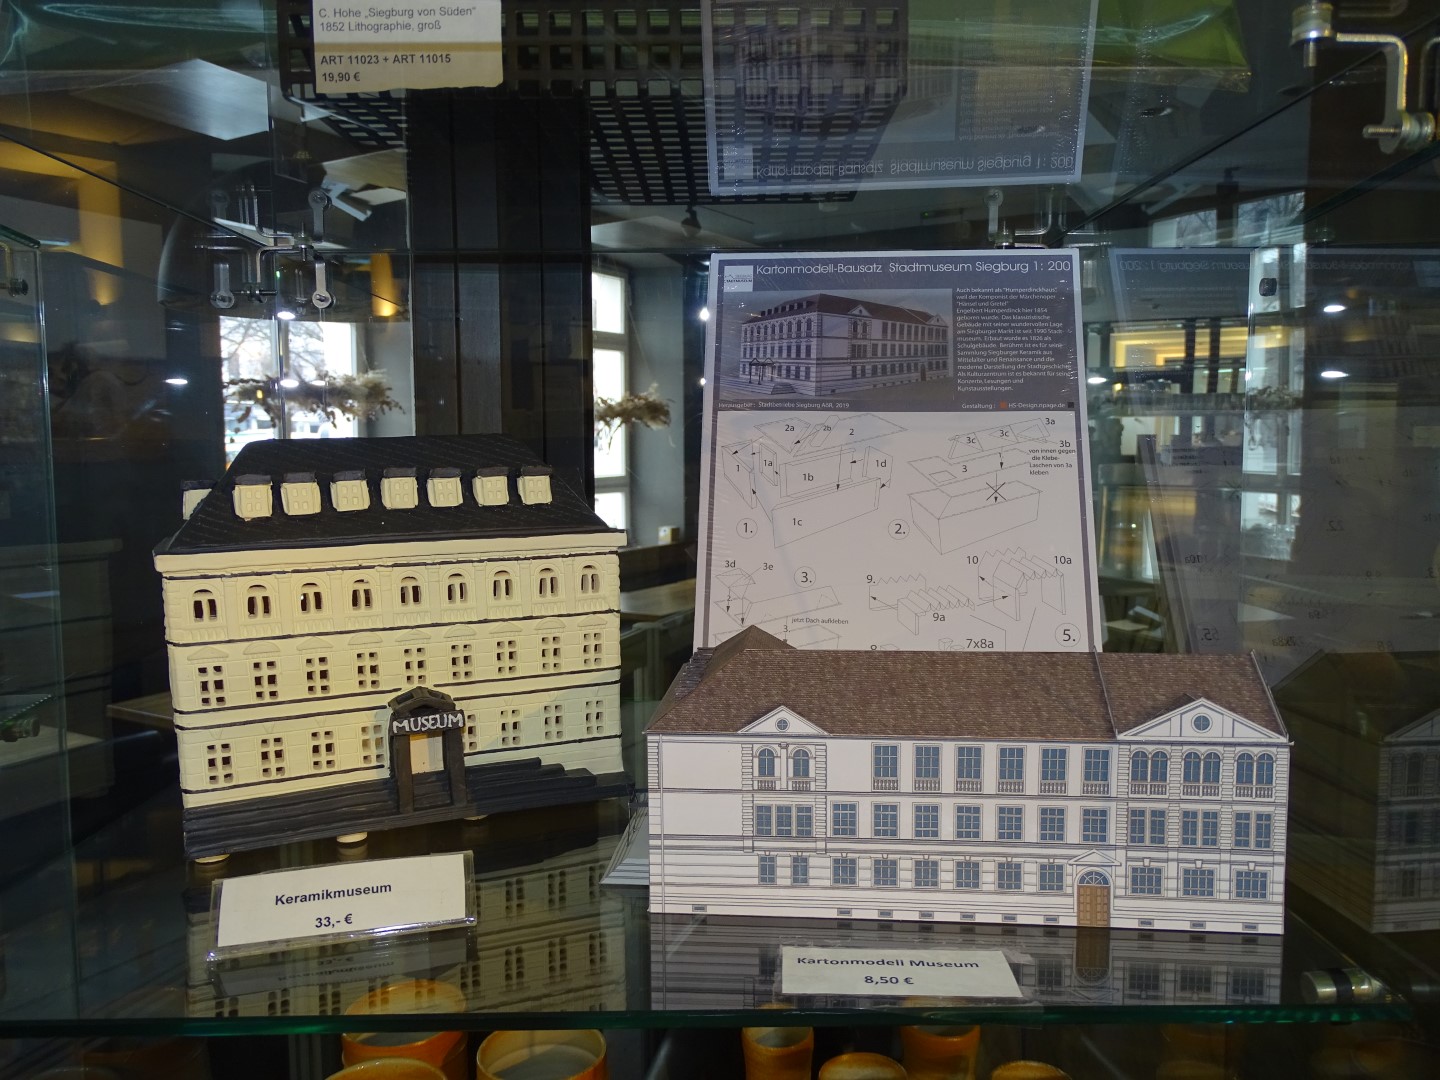 Das Stadtmuseum als Lichthaus und Modellbausatz aus Karton. Beides erhältlich im Museumsshop.